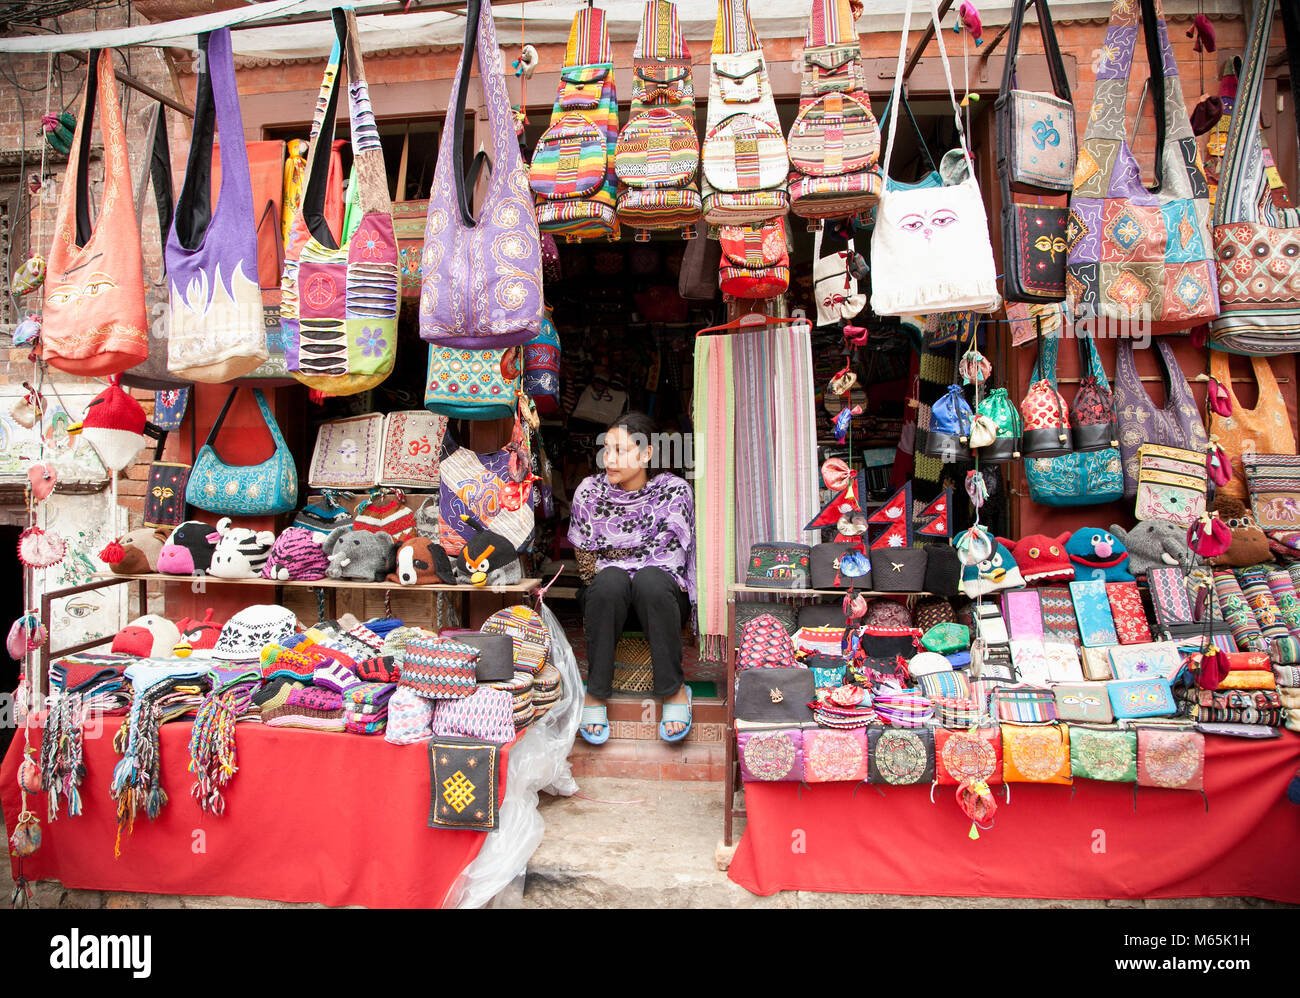 PATAN - 20 DE MAYO : mujer no identificada sentada en las escaleras delante de su tienda en Patan, Nepal el 20 de mayo de 2013. Patan es conocida por sus ricos cultu Foto de stock